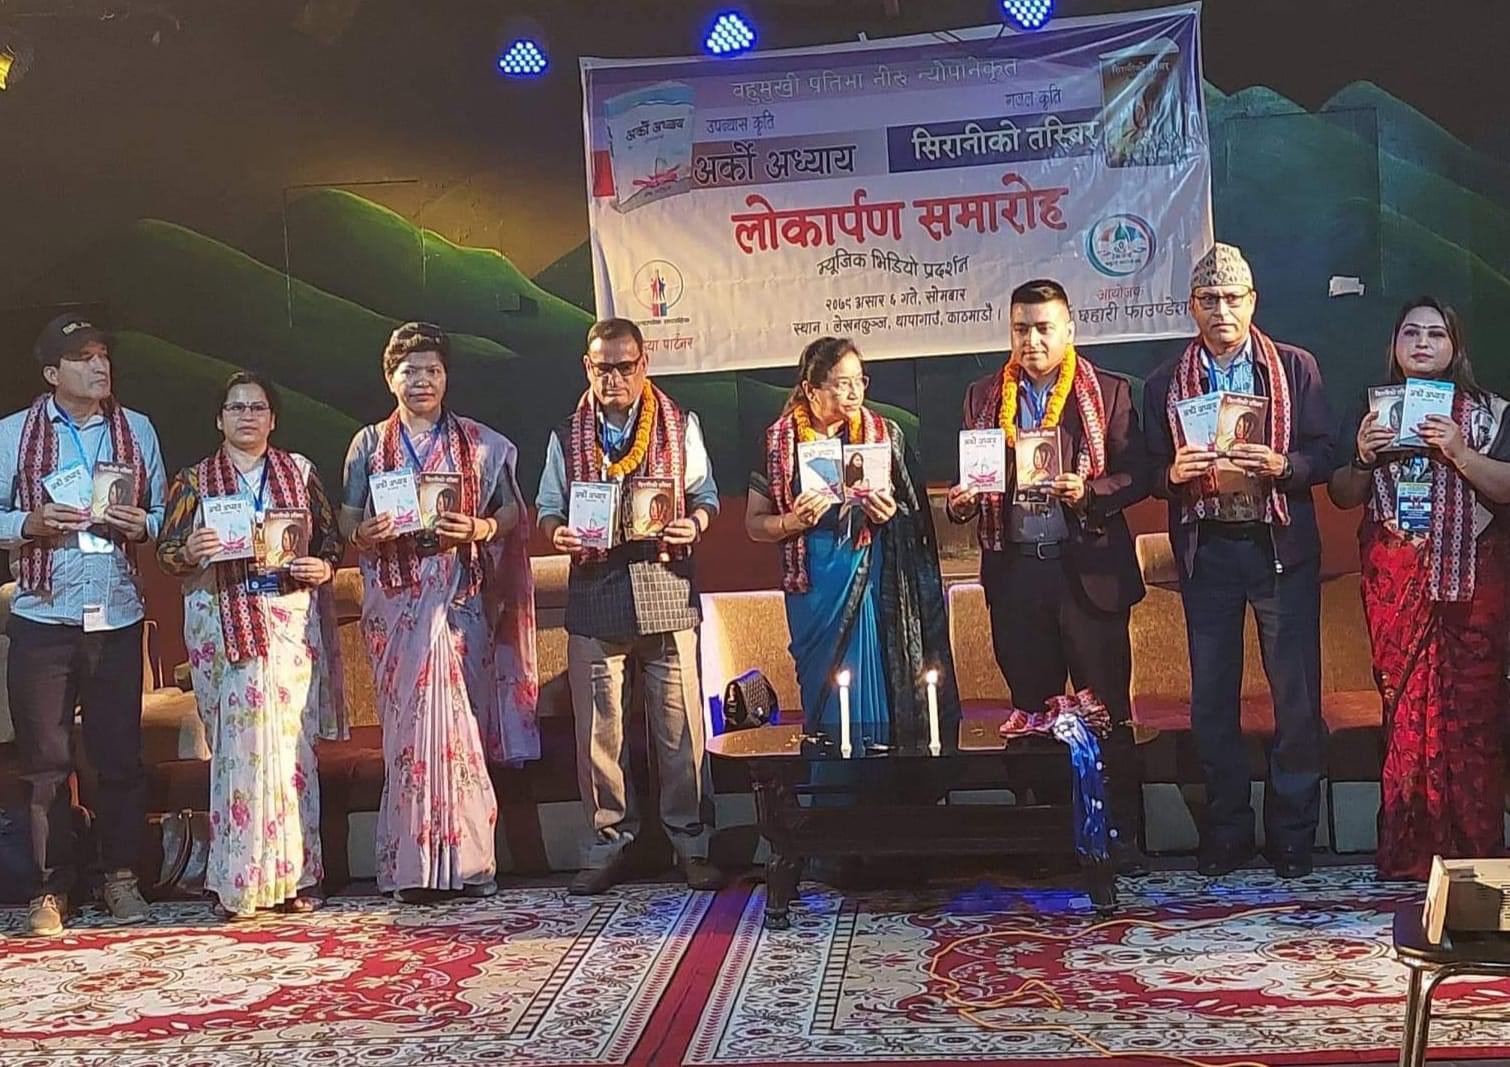 नेपाली साहित्यमा ‘’हिसाव किताव मिलाउंदै सिरानीको तस्विर संगै अर्को अध्याय ‘’ सार्वजनिक